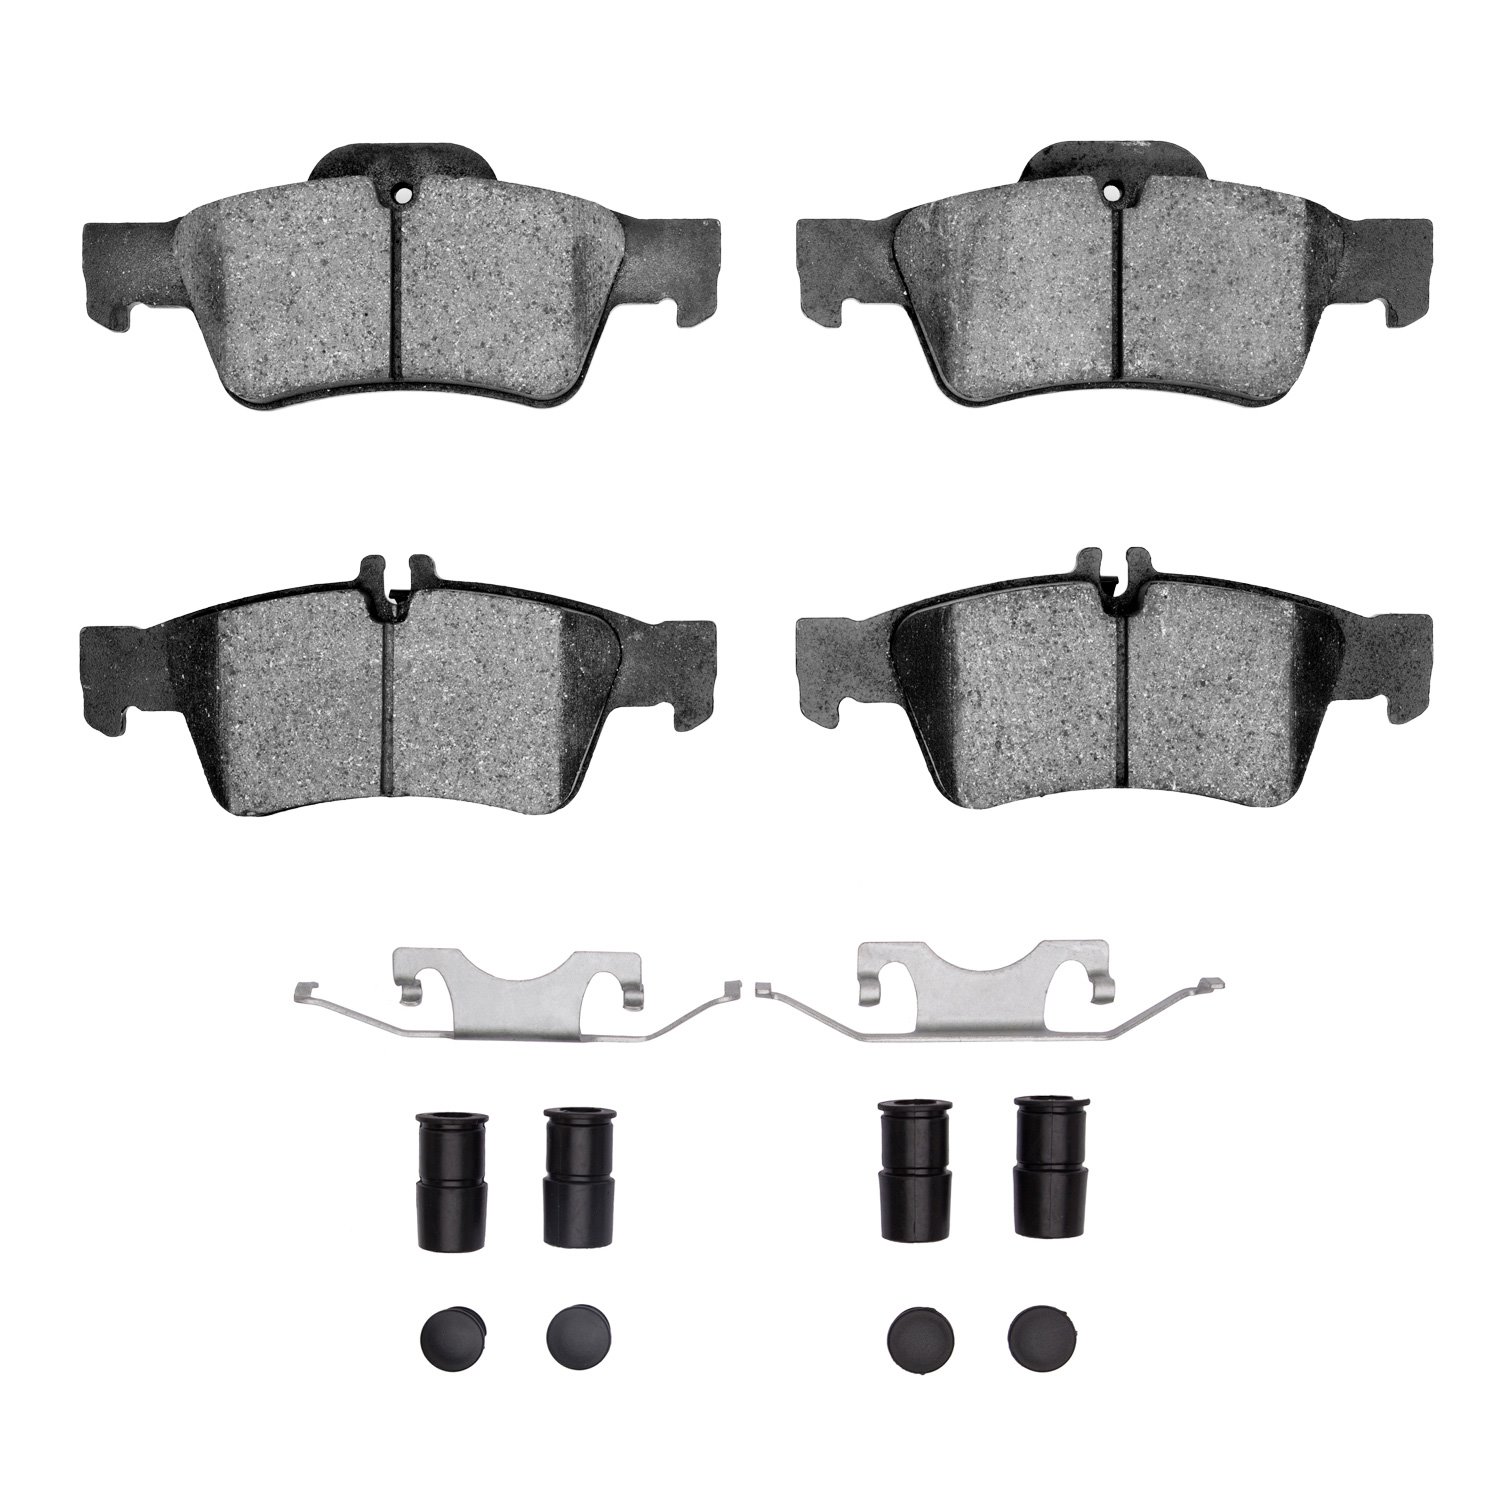 Semi-Metallic Brake Pads & Hardware Kit, 2002-2018 Mercedes-Benz, Position: Rear